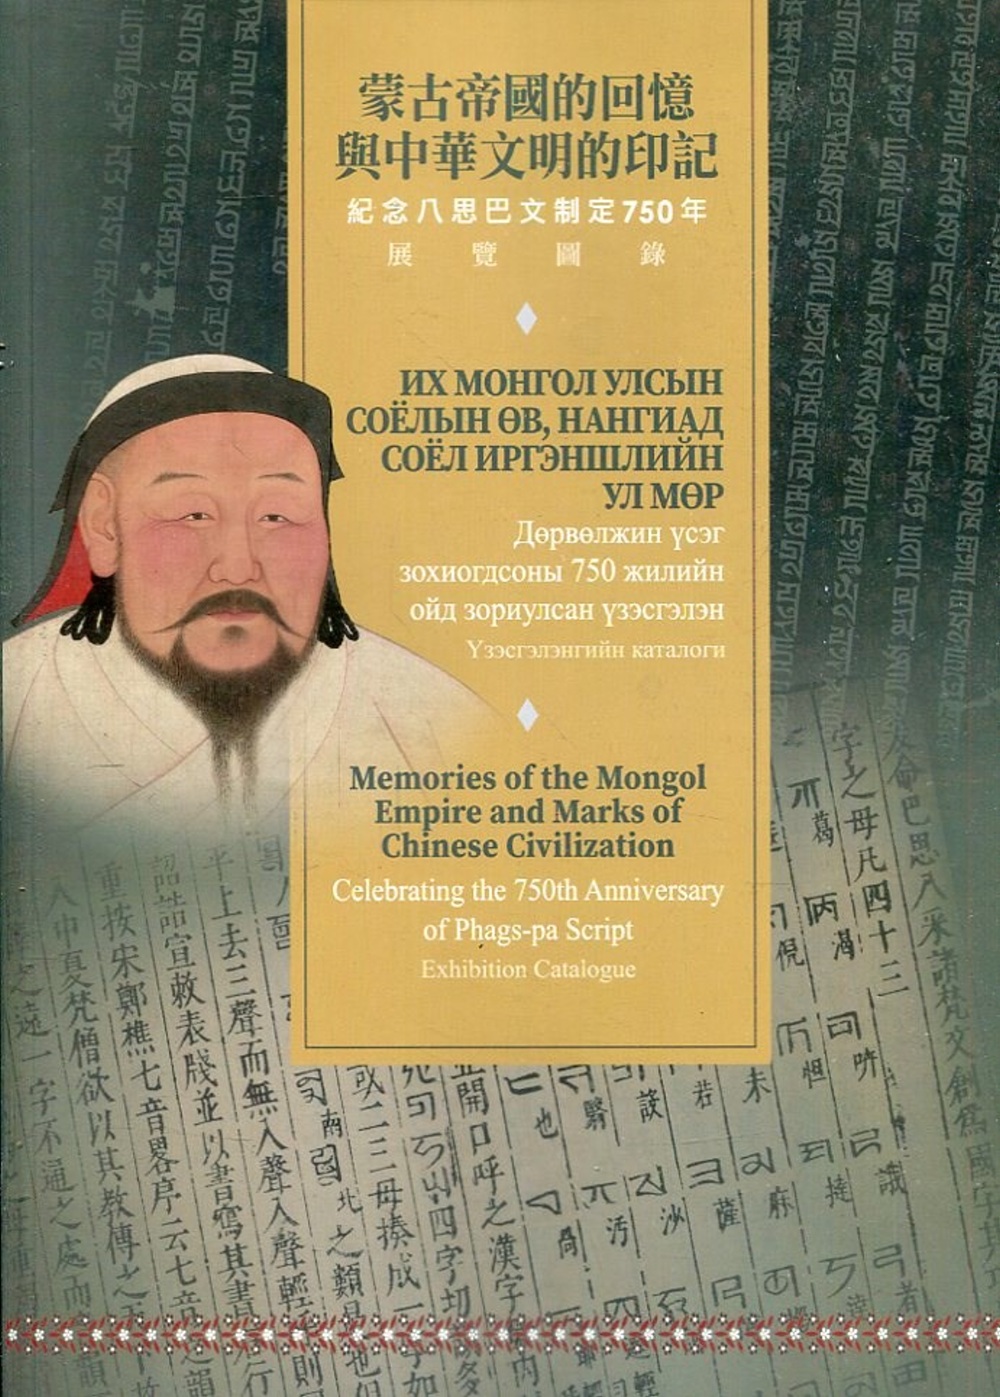 蒙古帝國的回憶與中華文明的印記